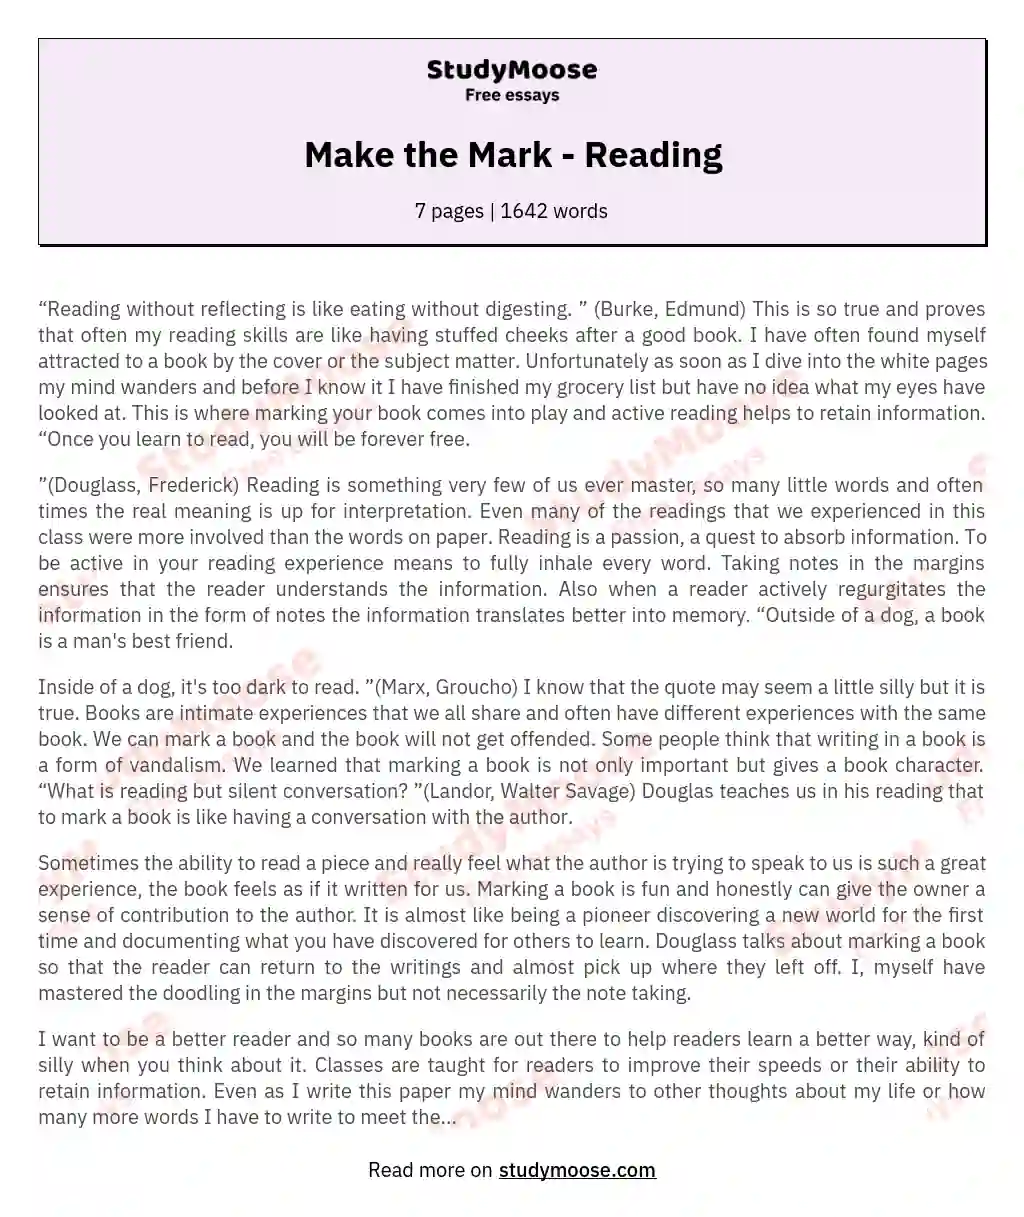 Make the Mark - Reading essay